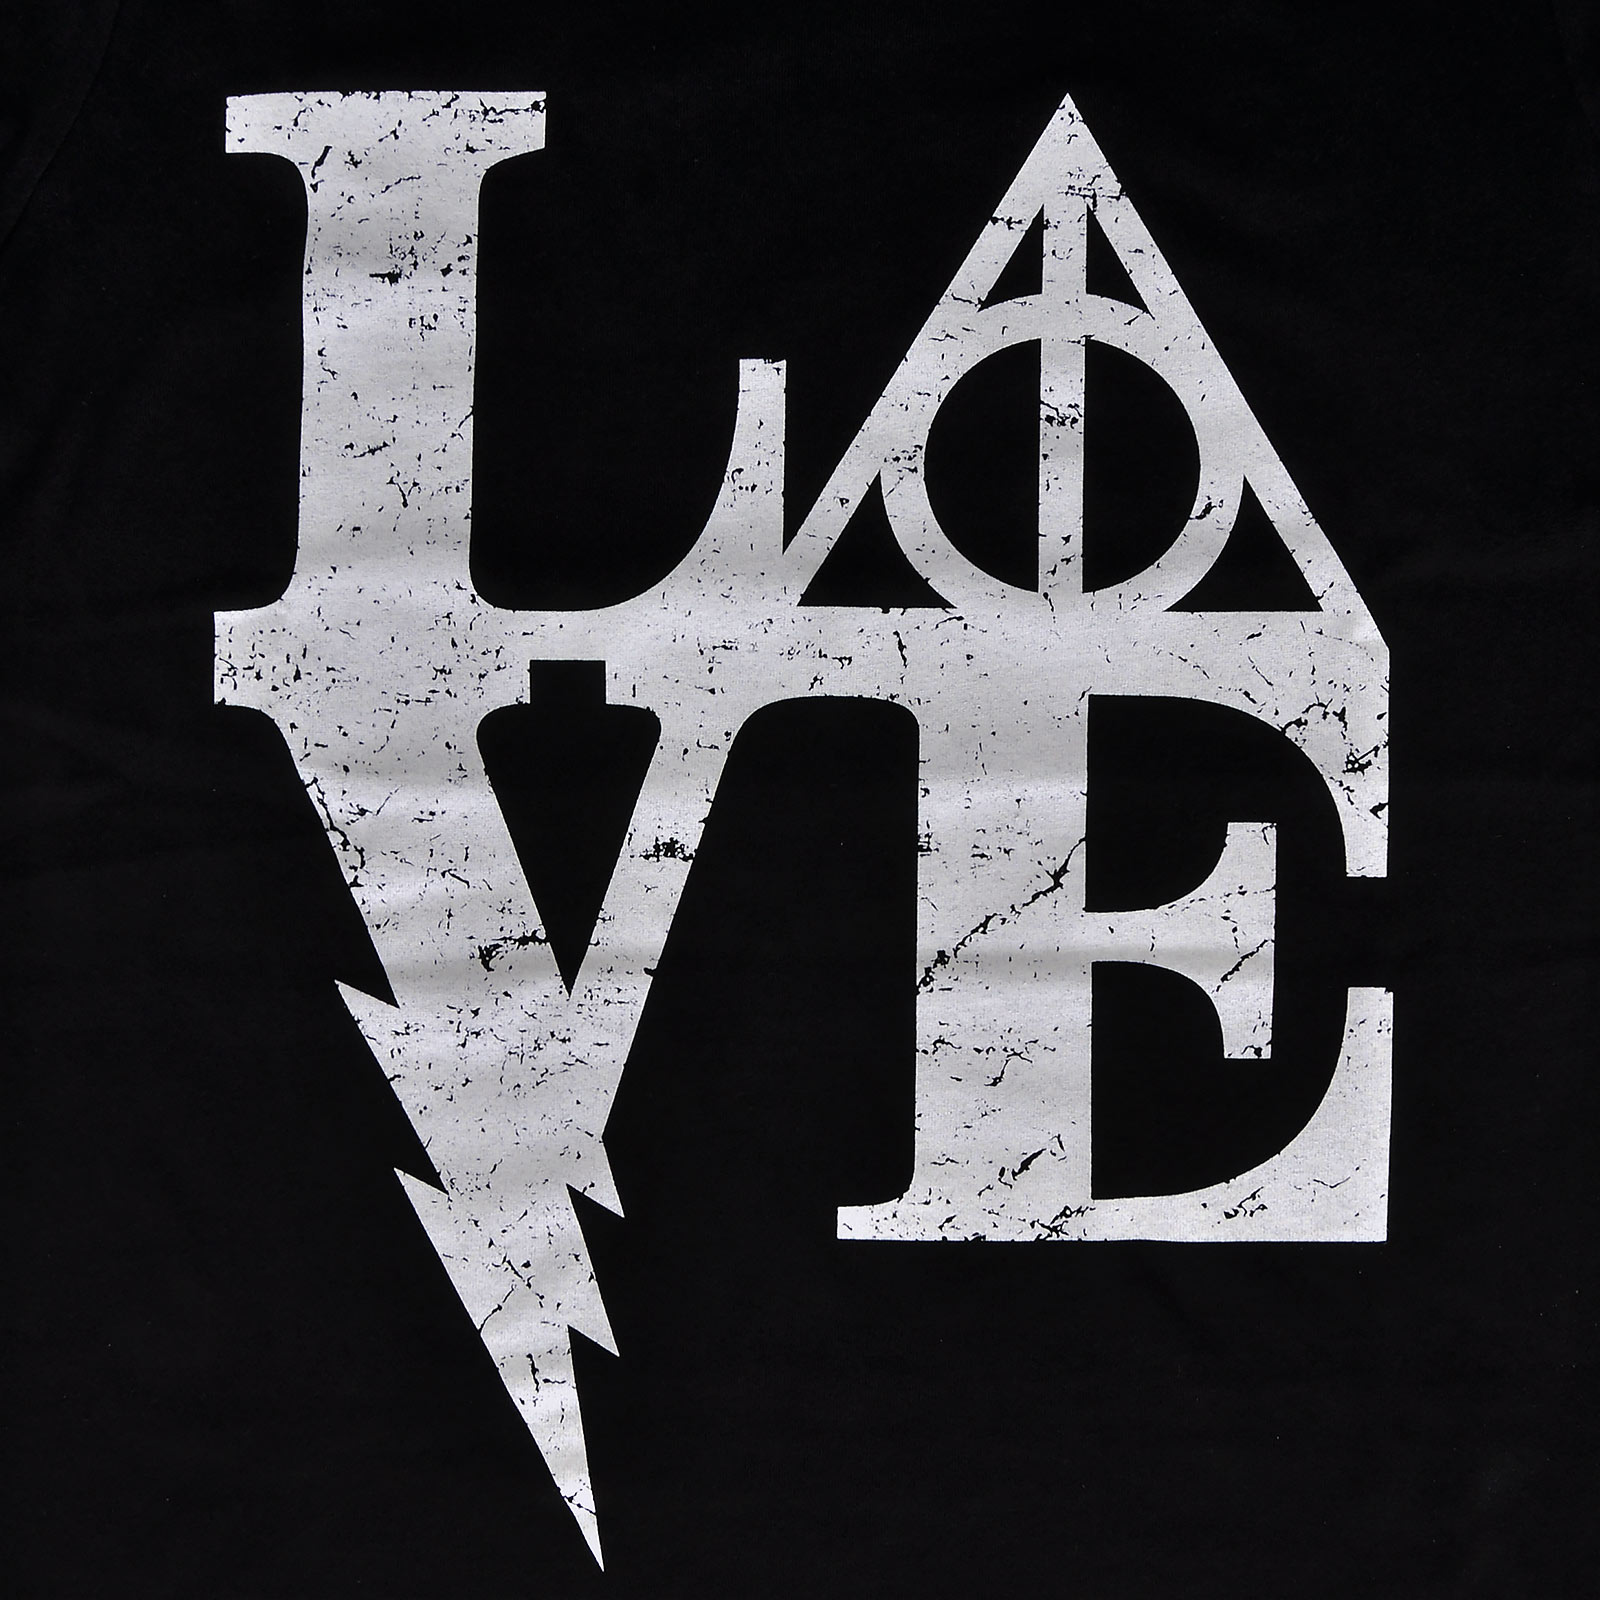 T-shirt Wizarding Love pour femmes pour les fans de Harry Potter